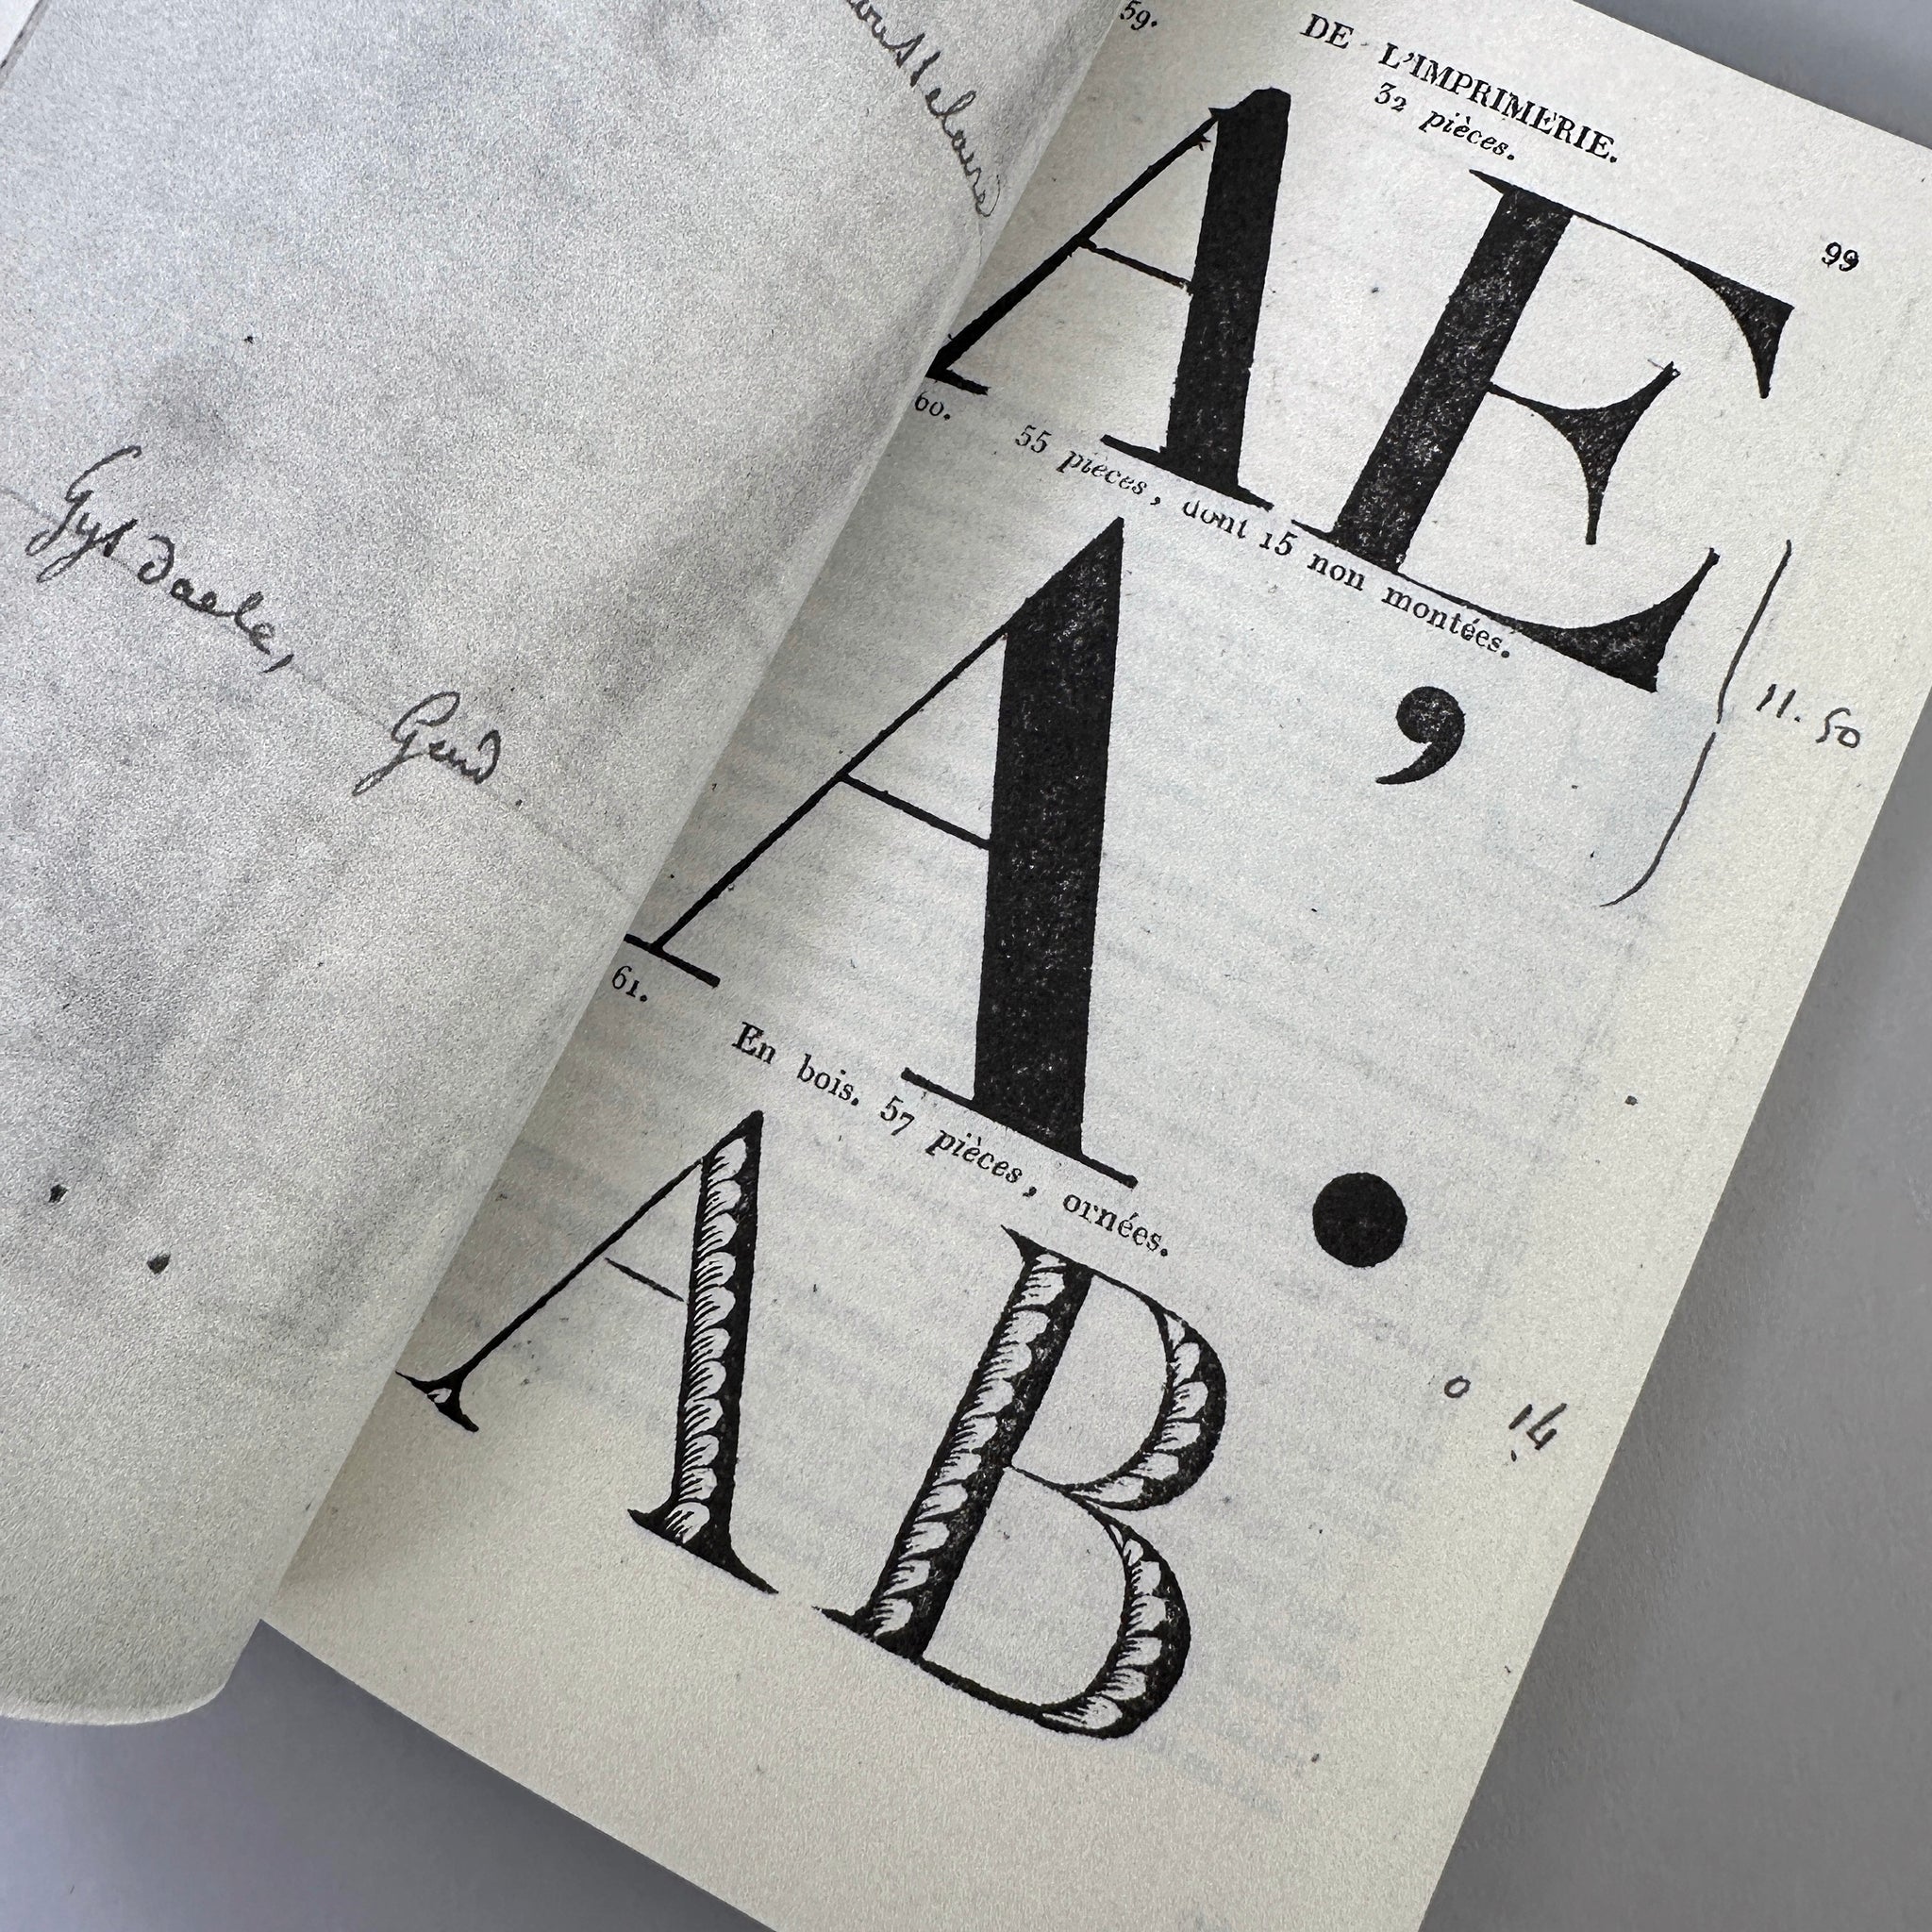 AVANT LA LETTRE: An unknown, early smile ahead of fancy typography